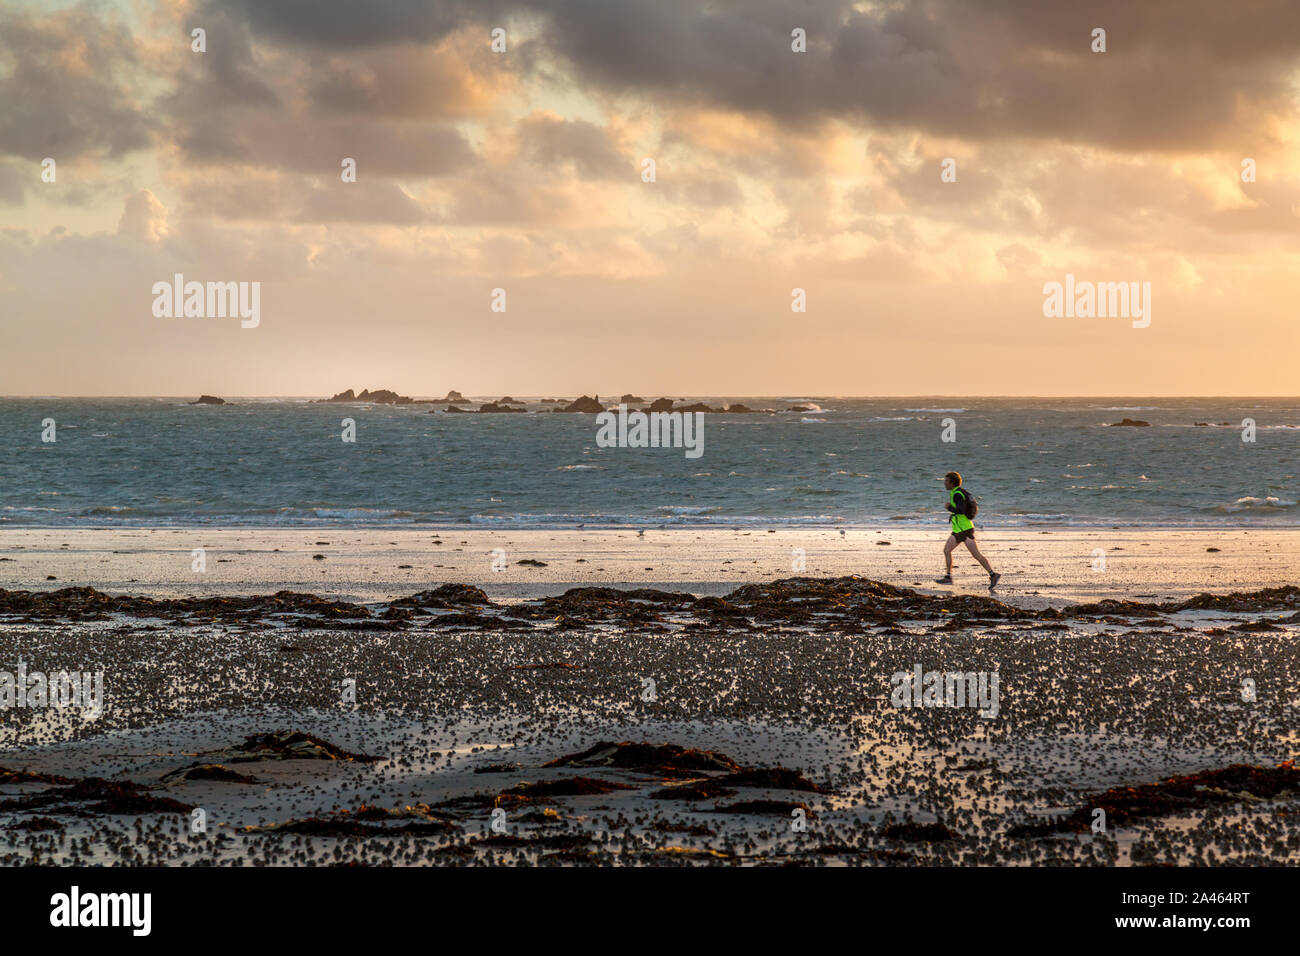 Une personne, le jogging ou la course, sur une plage de Jersey sur les îles de la Manche, au coucher du soleil. Banque D'Images